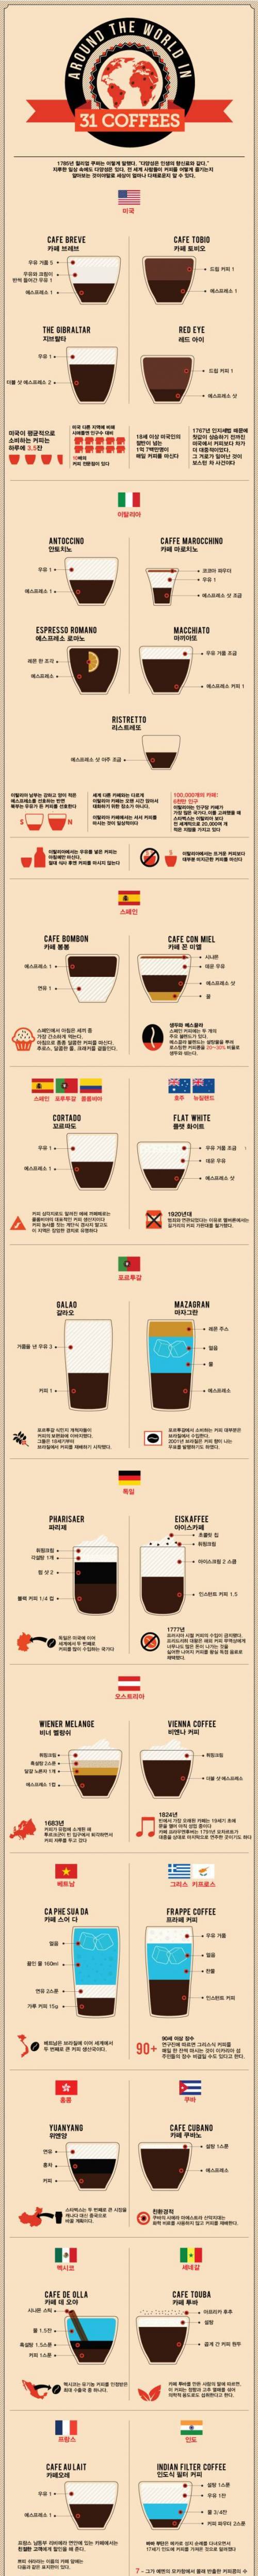 세계의 커피 레시피.jpg